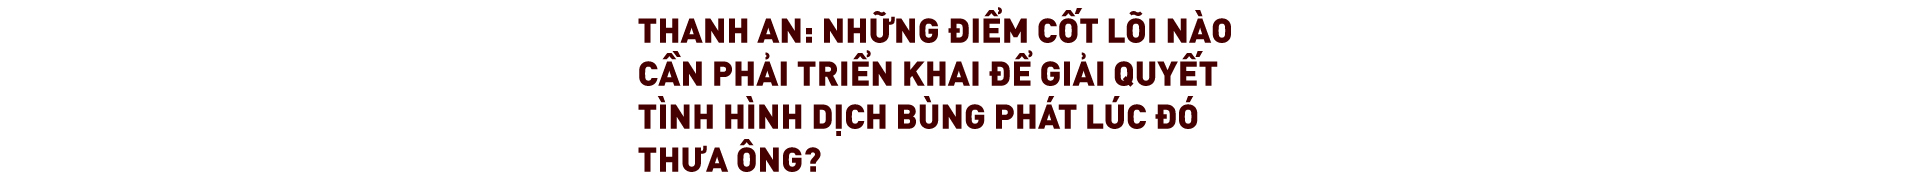 Thứ trưởng Bộ Y tế Nguyễn Trường Sơn: “Có lúc cả bộ phận thường trực ngồi khóc với nhau - Ảnh 22.